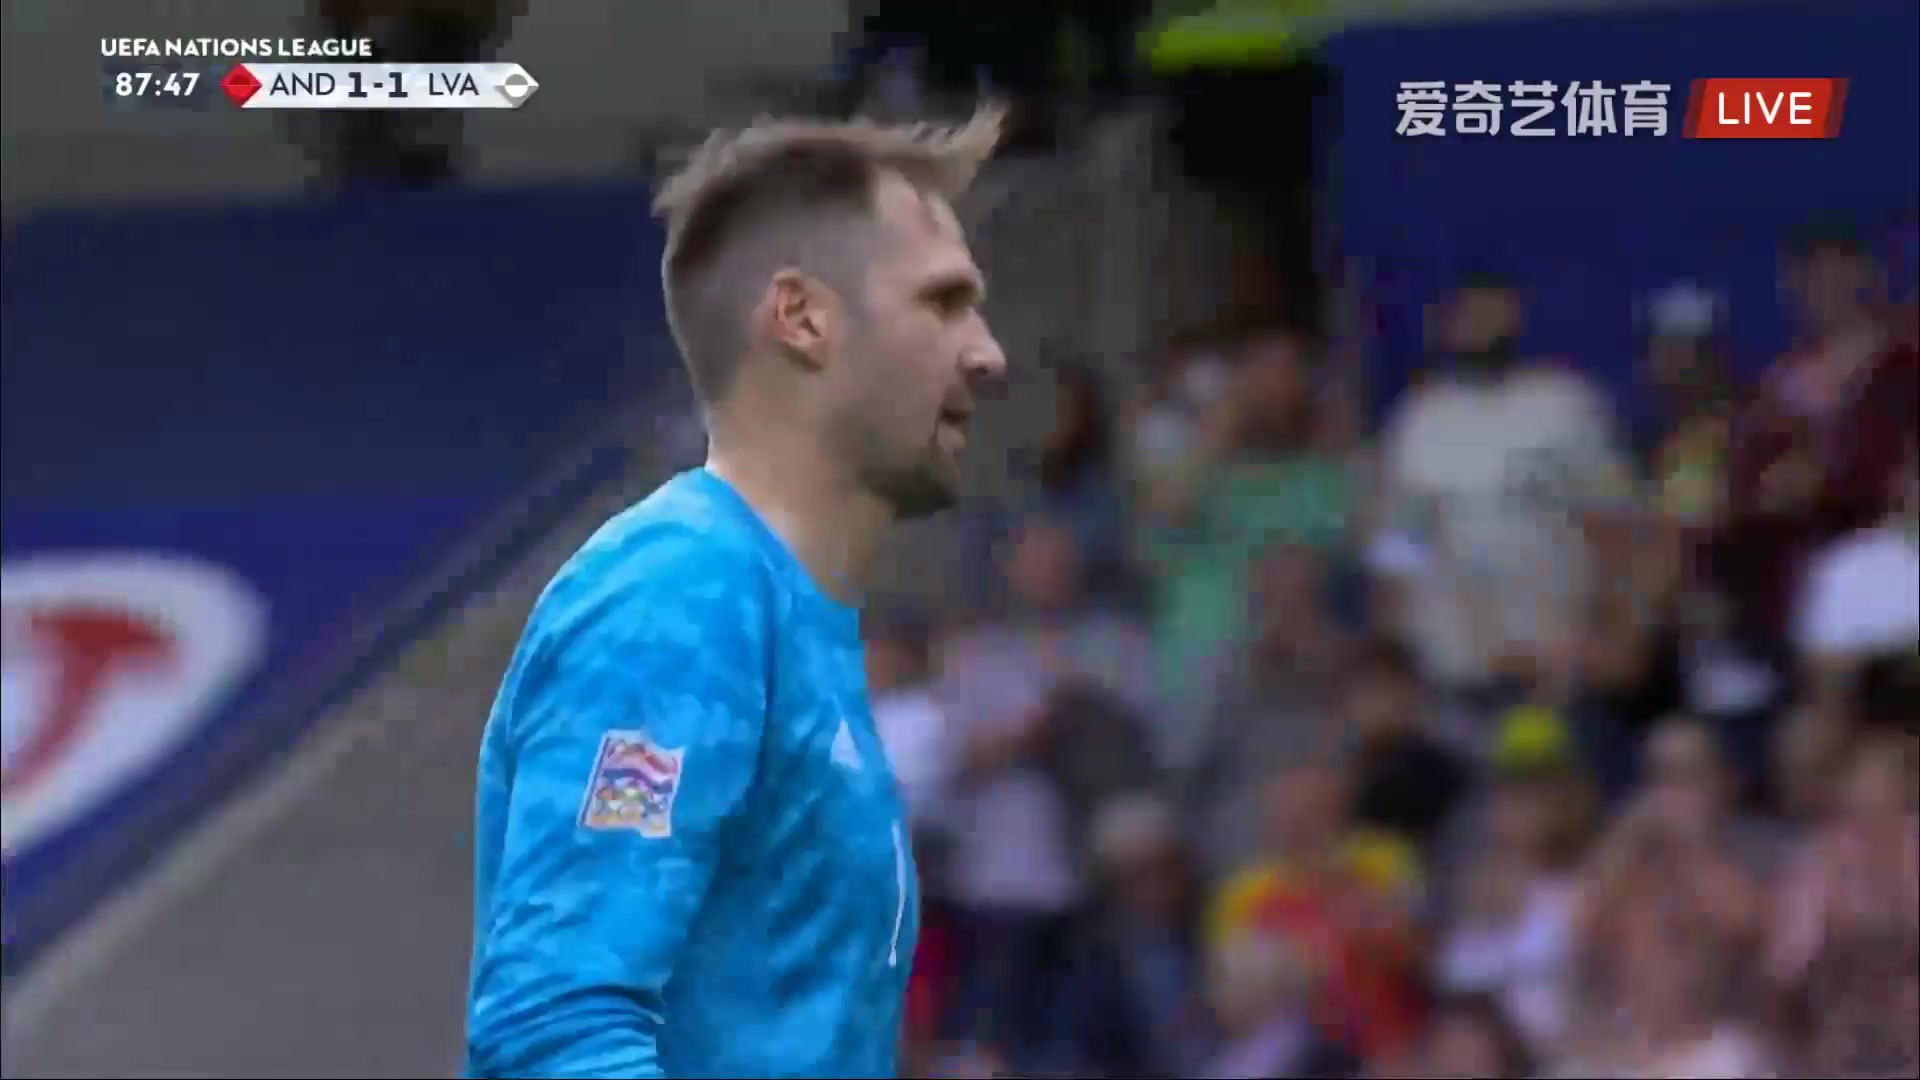 UEFA  NL Andorra Vs Latvia  Goal in 89 min, Score 1:1